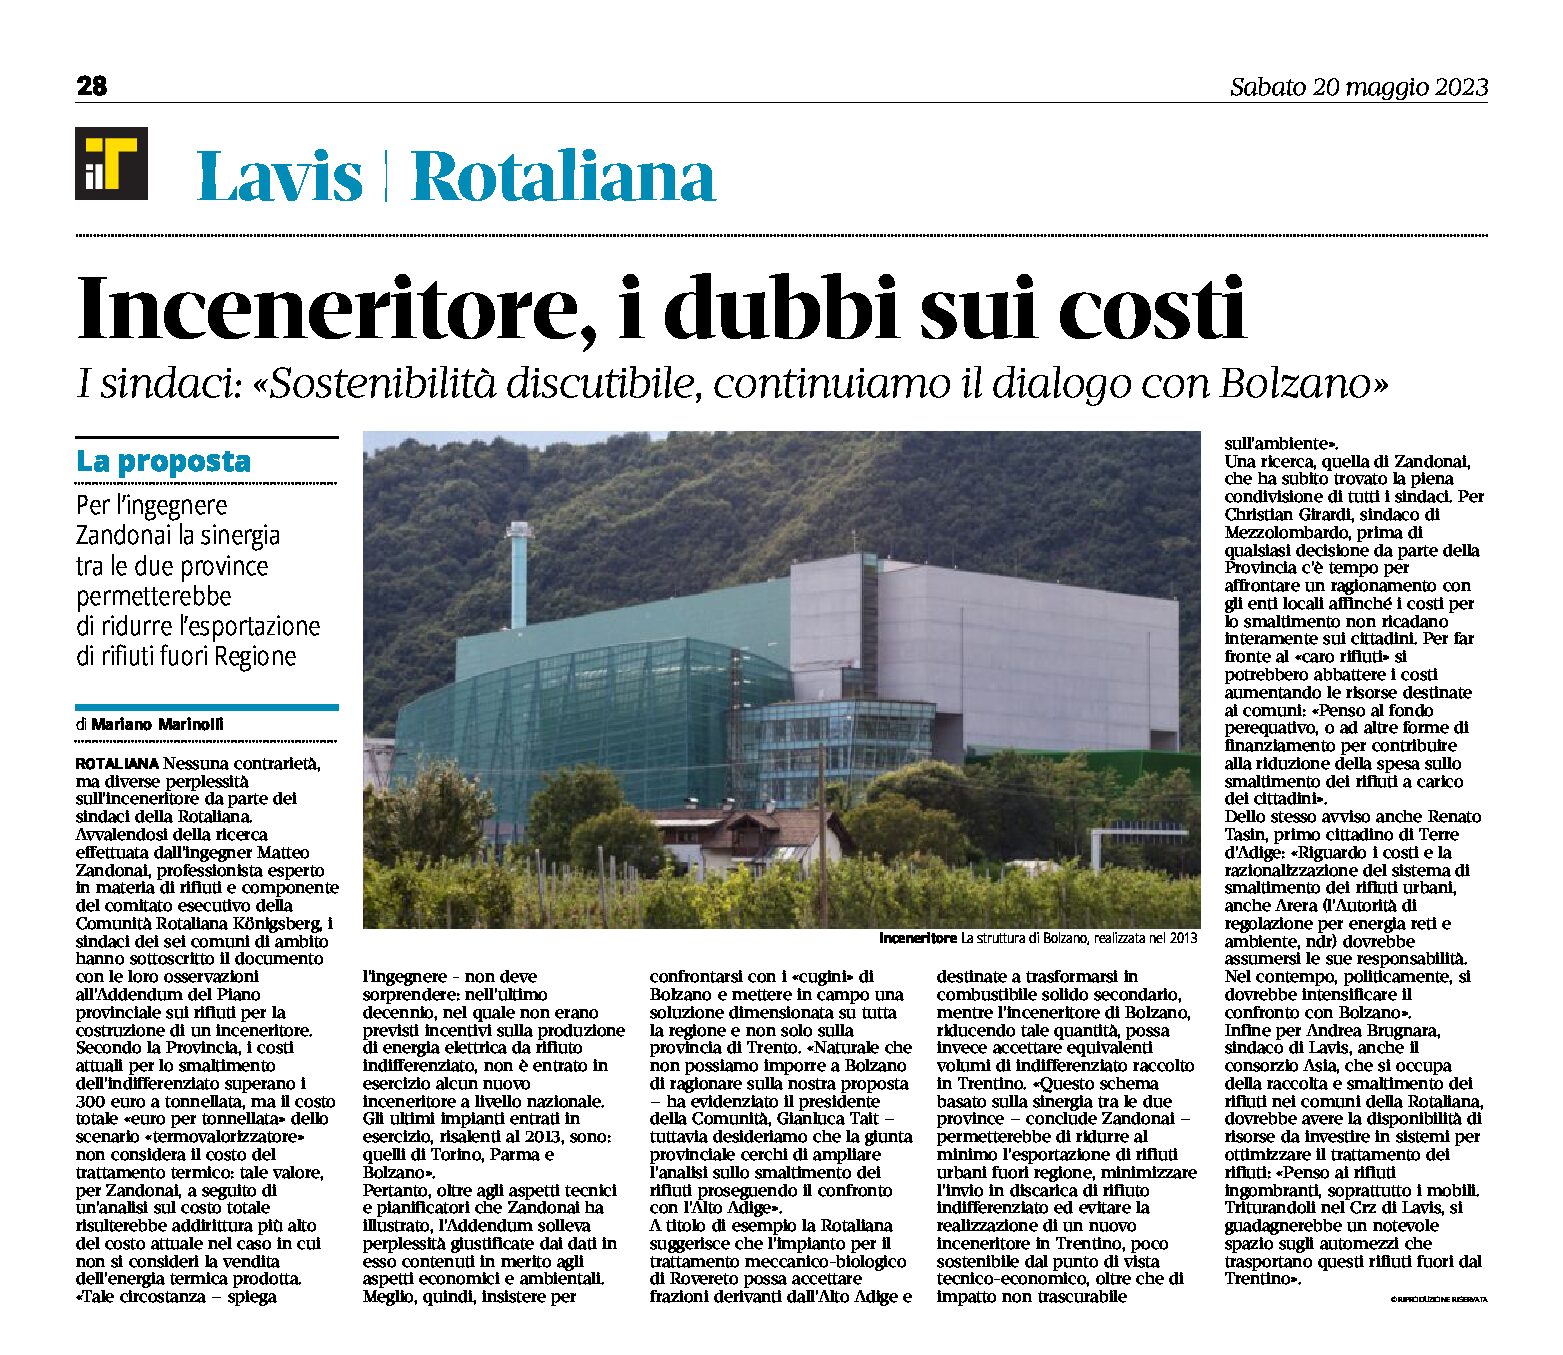 Rotaliana: inceneritore, i dubbi sui costi. I sindaci “continuiamo il dialogo con Bolzano”